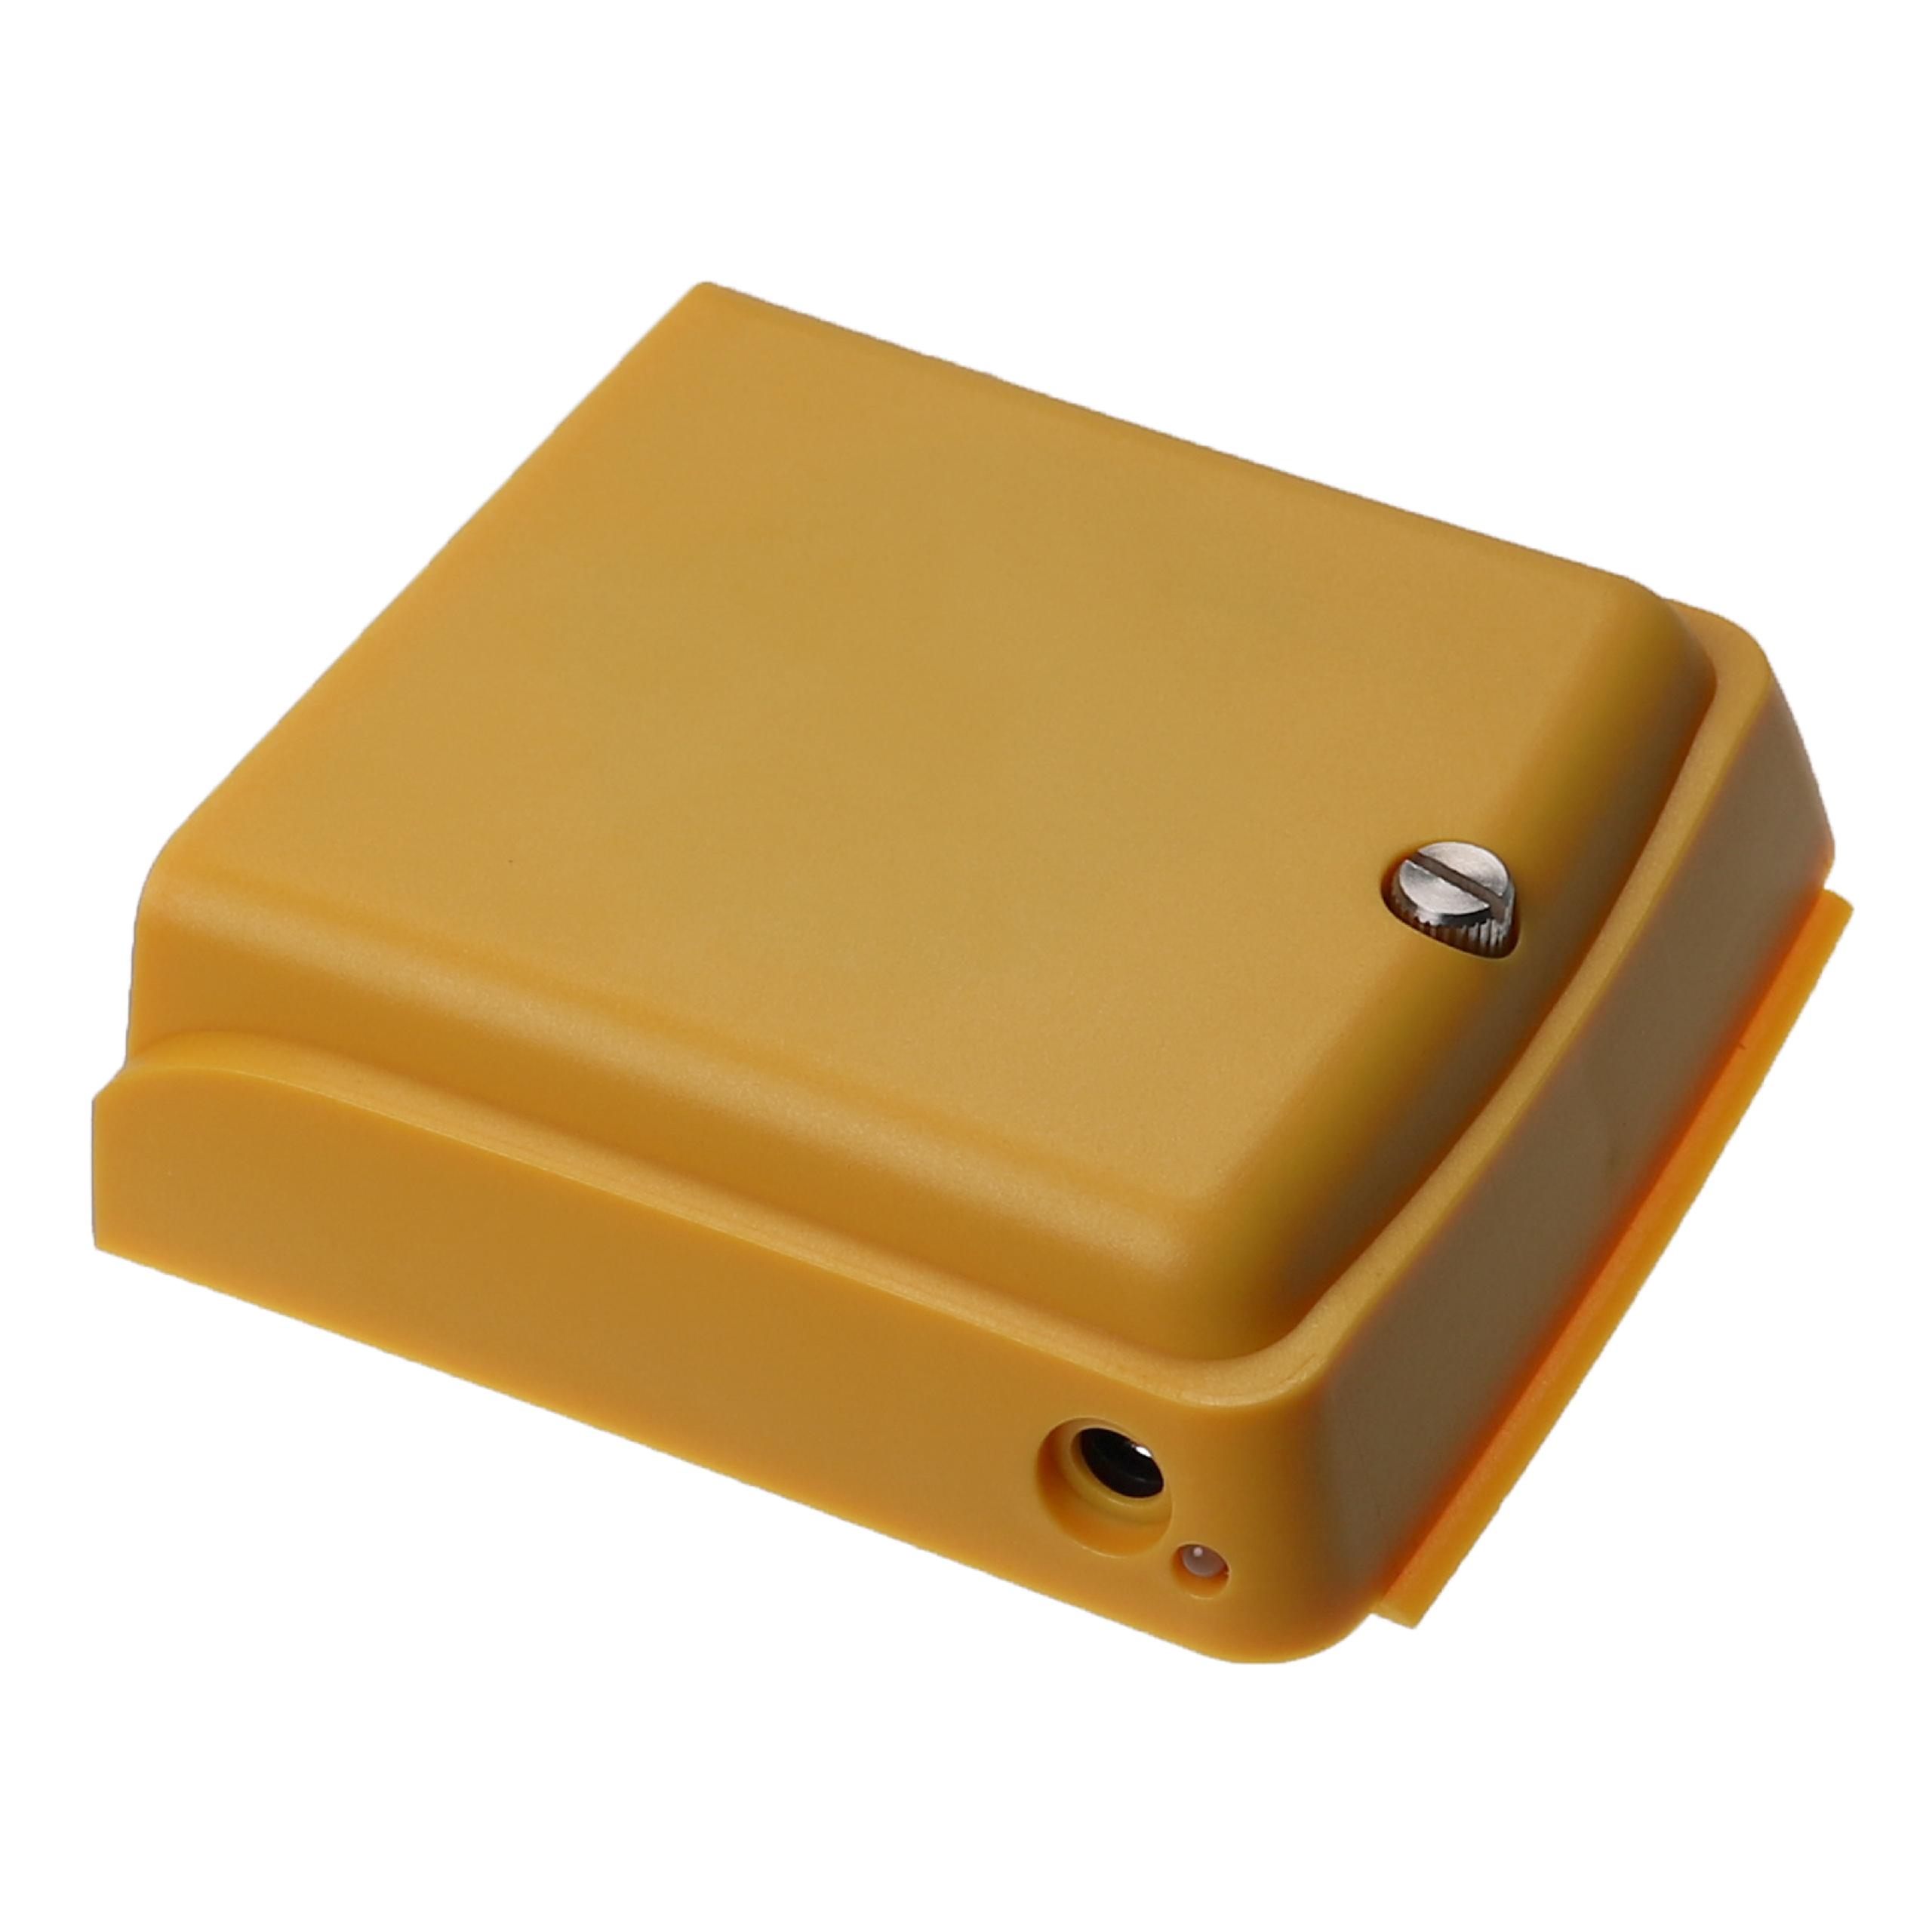 Akumulator do przyrządu pomiarowego zamiennik Fluke DTX-LION, BP7440 - 5200 mAh 7,4 V Li-Ion